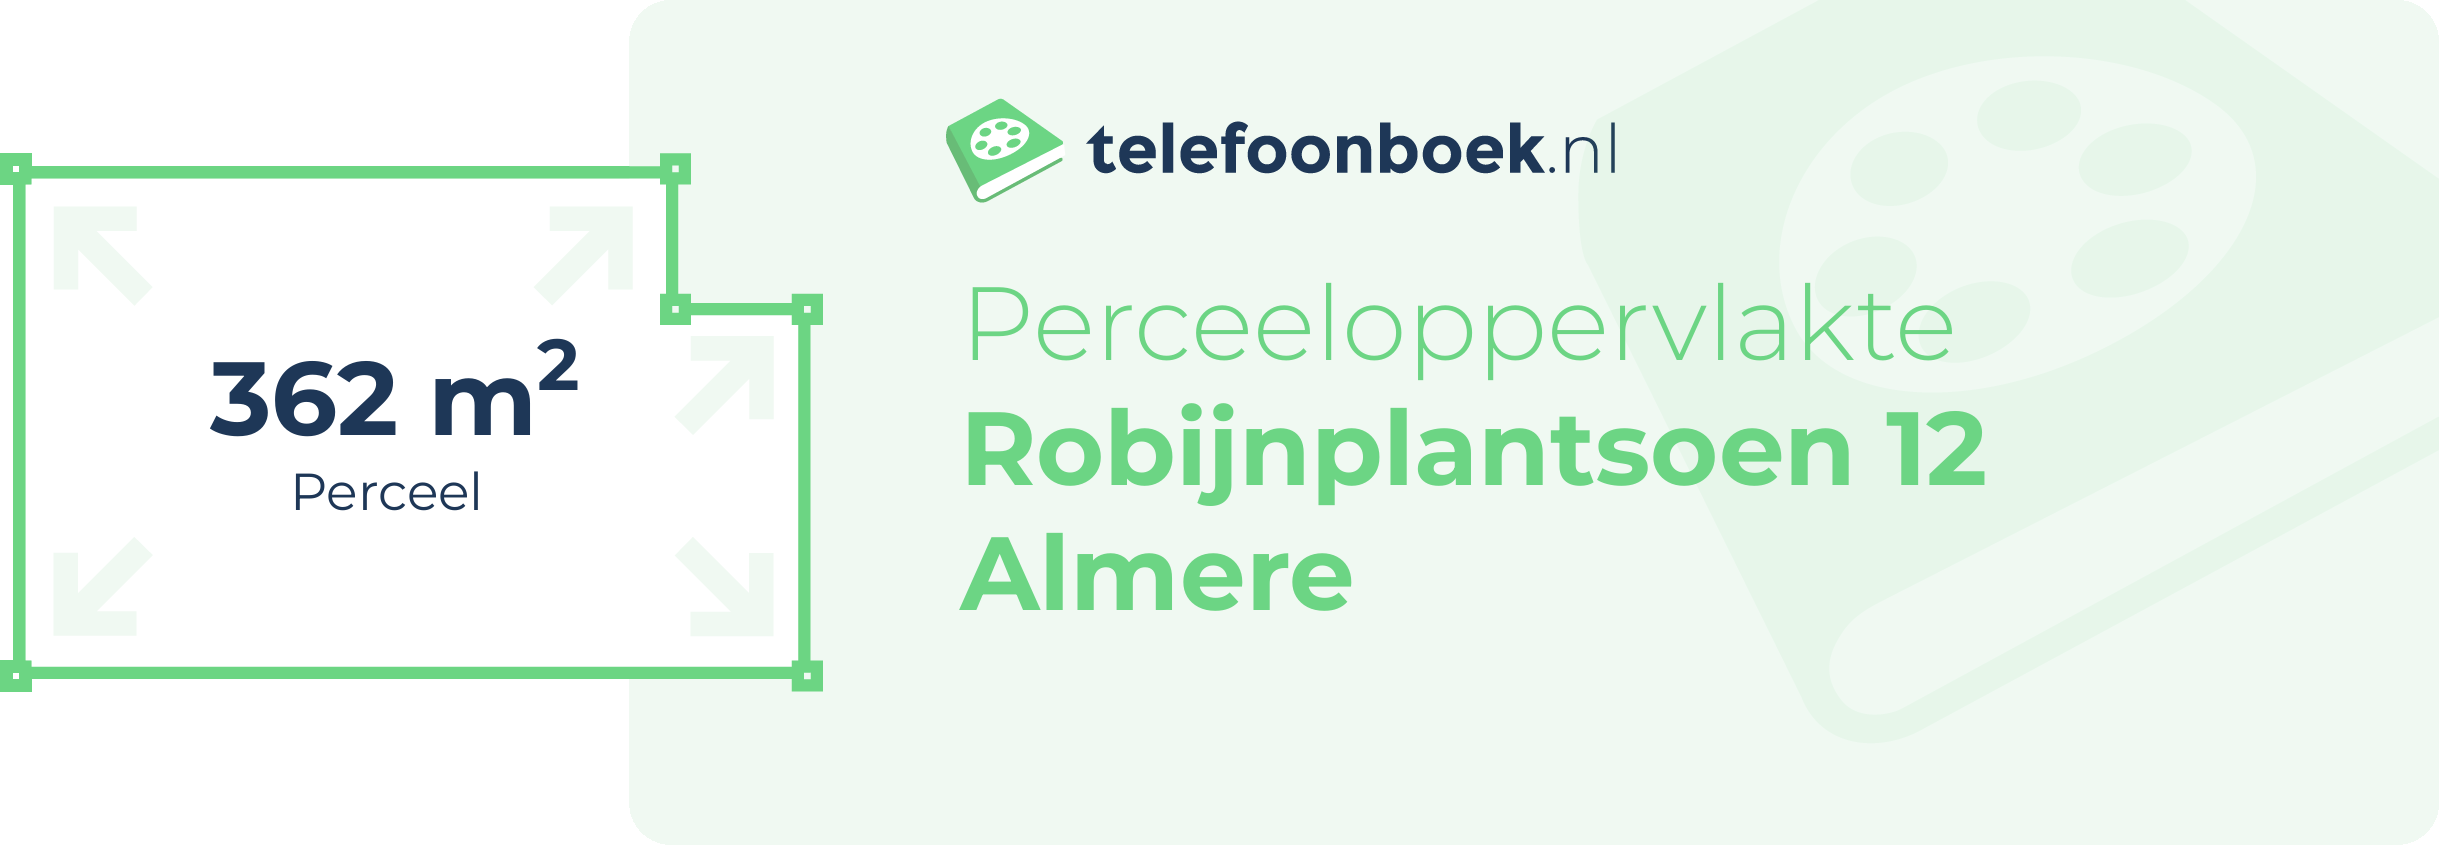 Perceeloppervlakte Robijnplantsoen 12 Almere